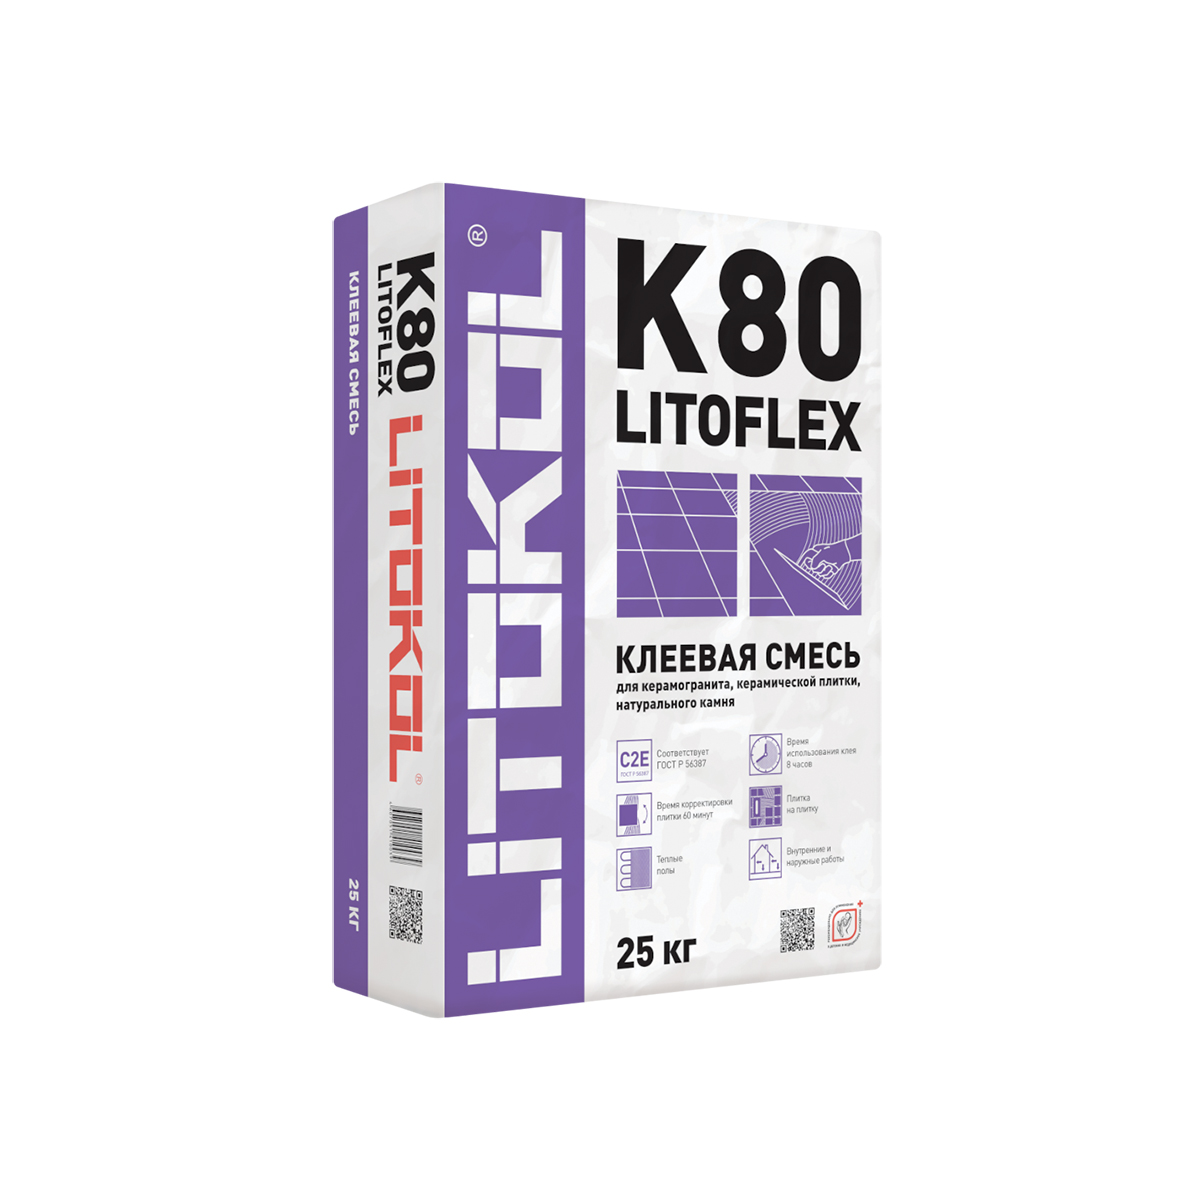 Клей для плитки Litokol Litoflex K80, 25 кг клей для плитки готовый litokol litoacril fix 5 кг